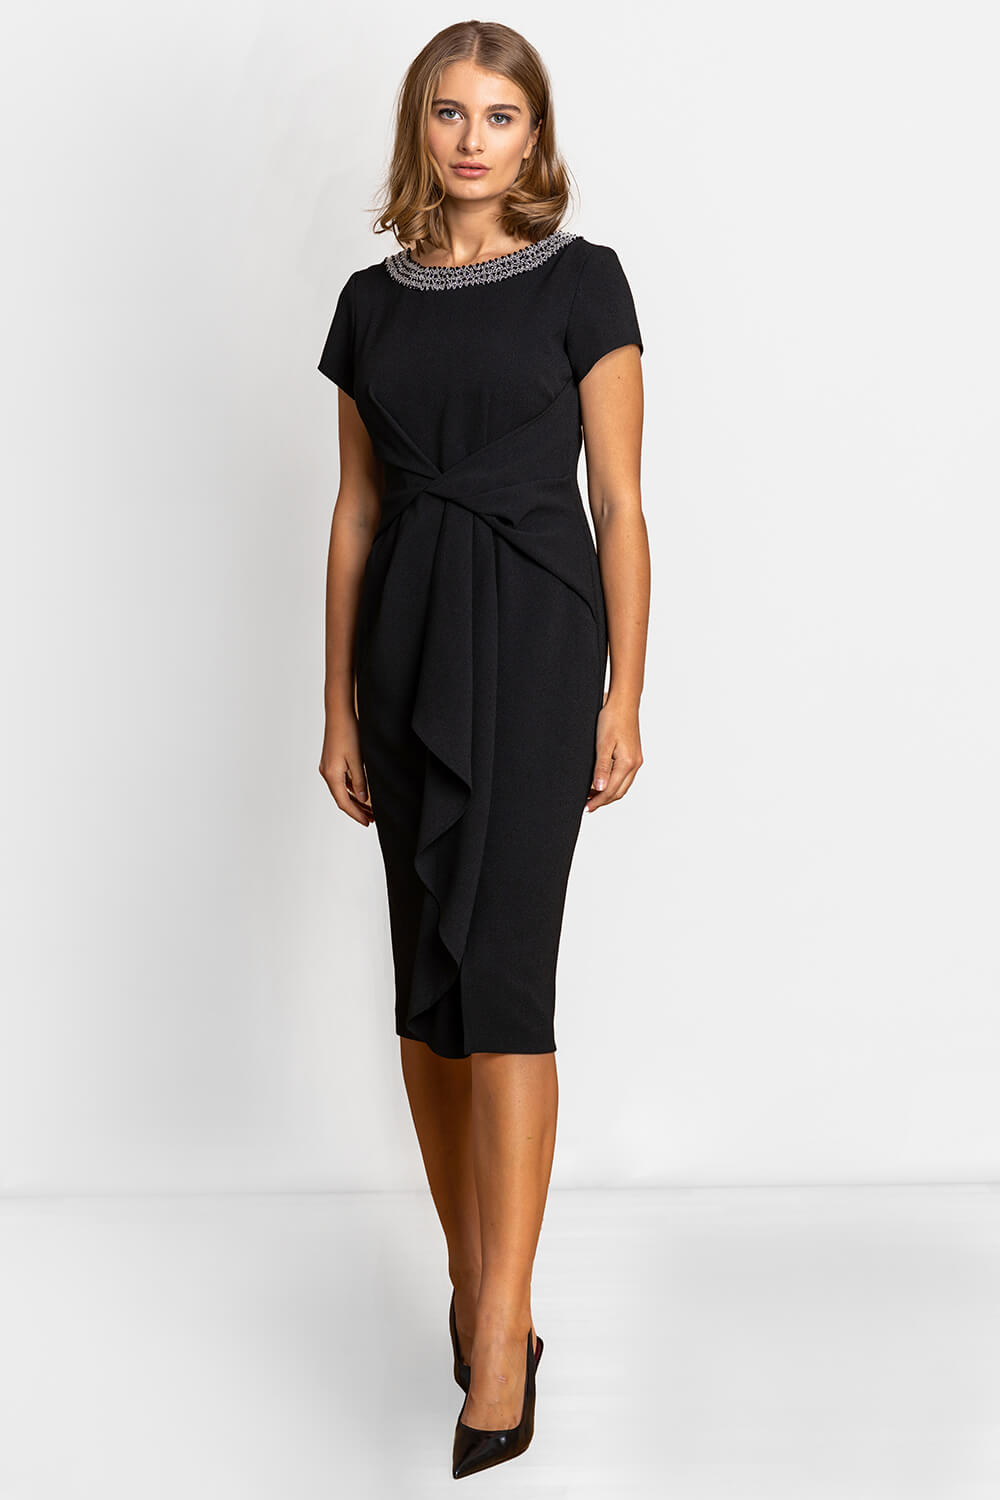 Embellished Twist Waist Midi Dress in Black - Roman Originals UK